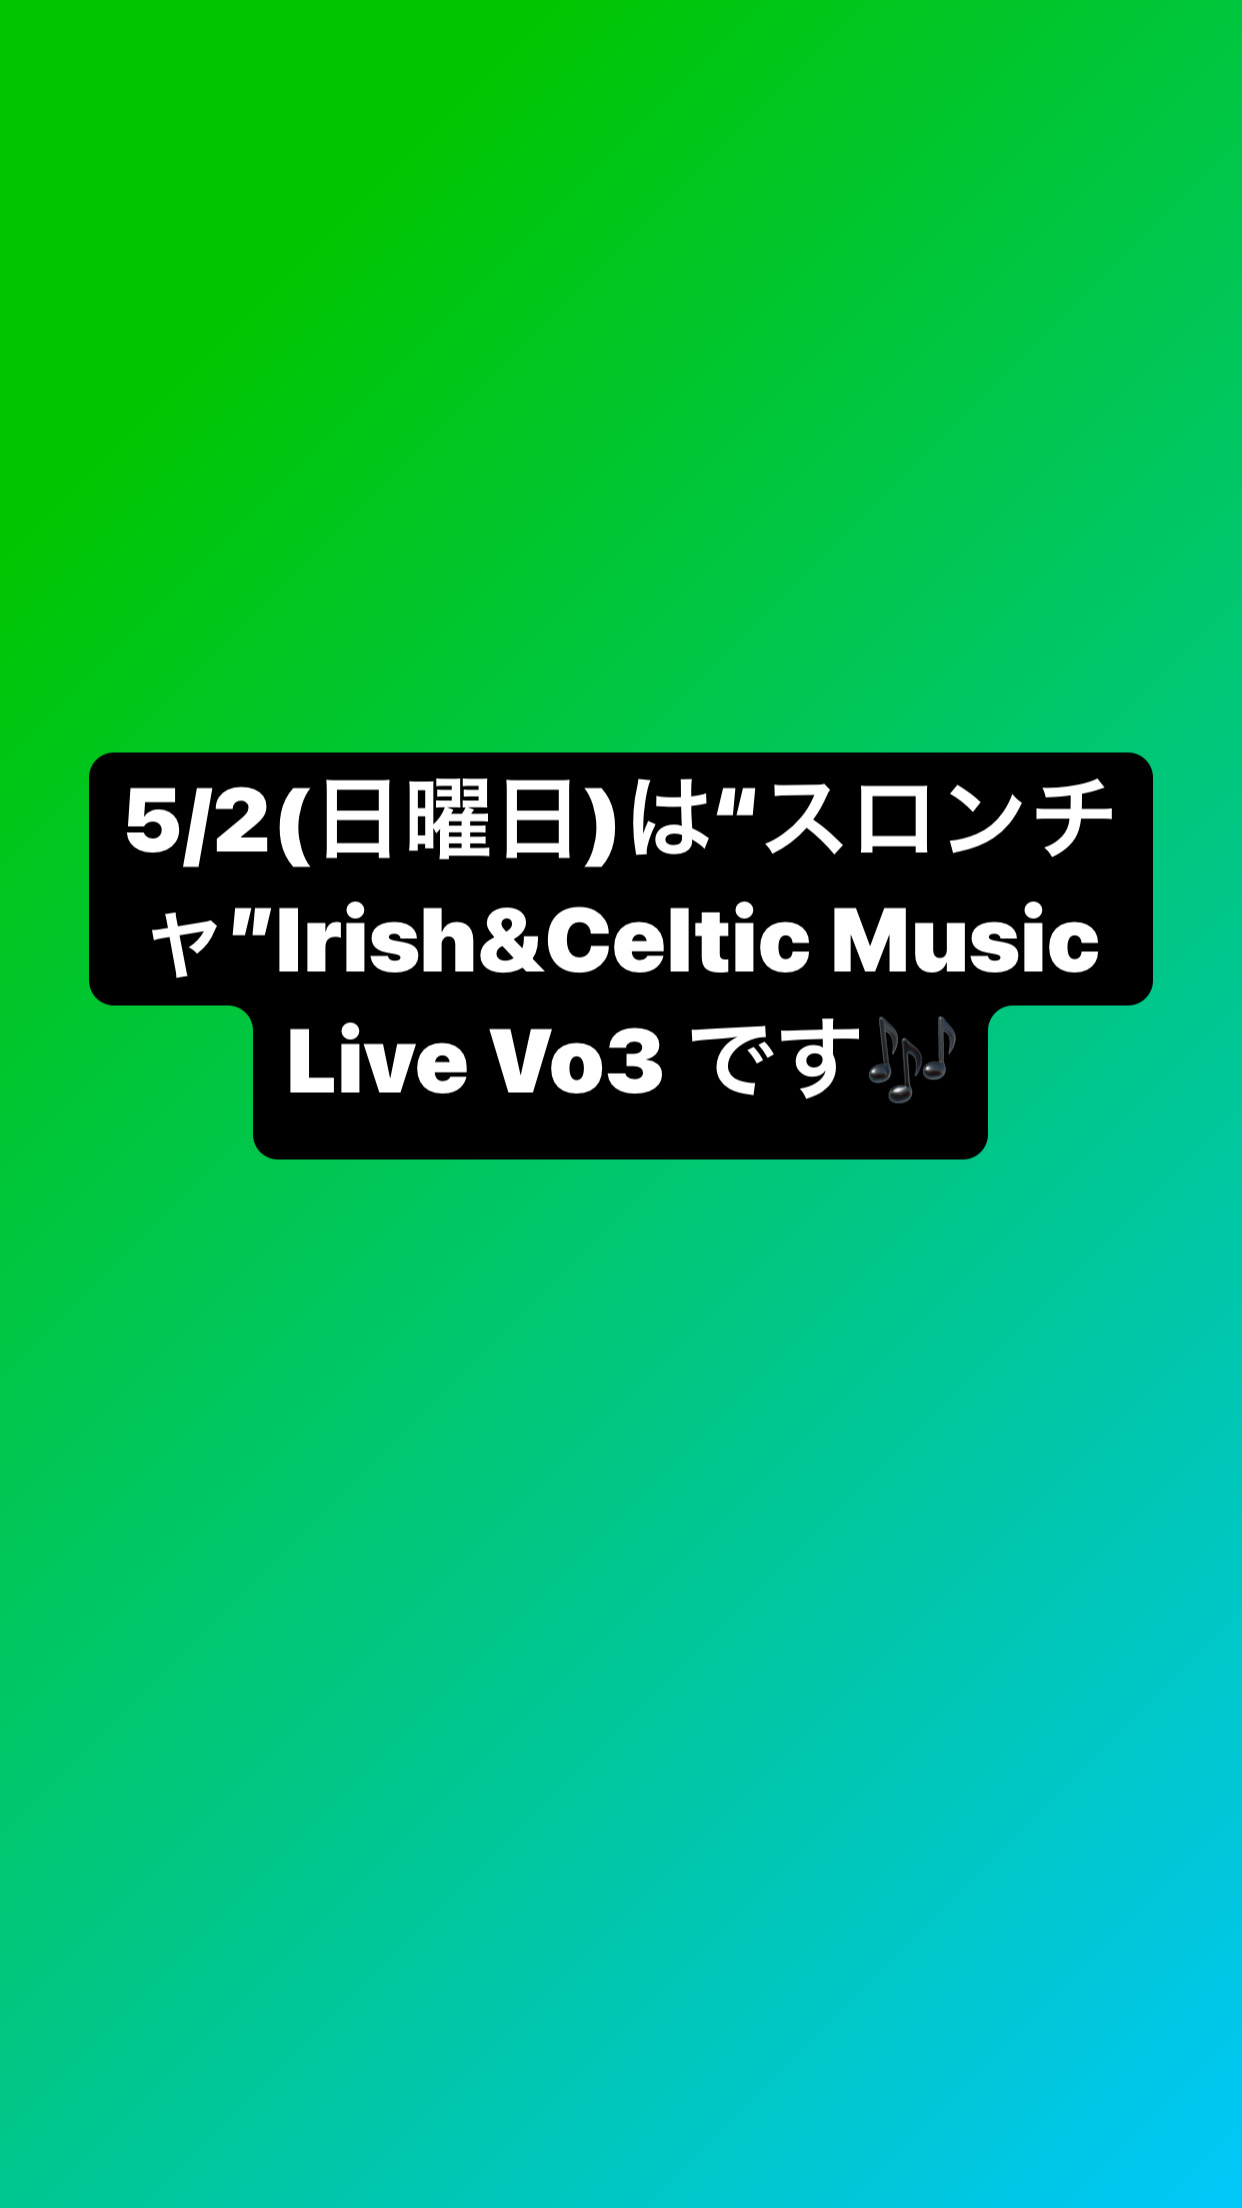 5/2（日曜日）はIrish&Celtic Music Live “SLAINTE”（スロンチャ：乾杯）です！